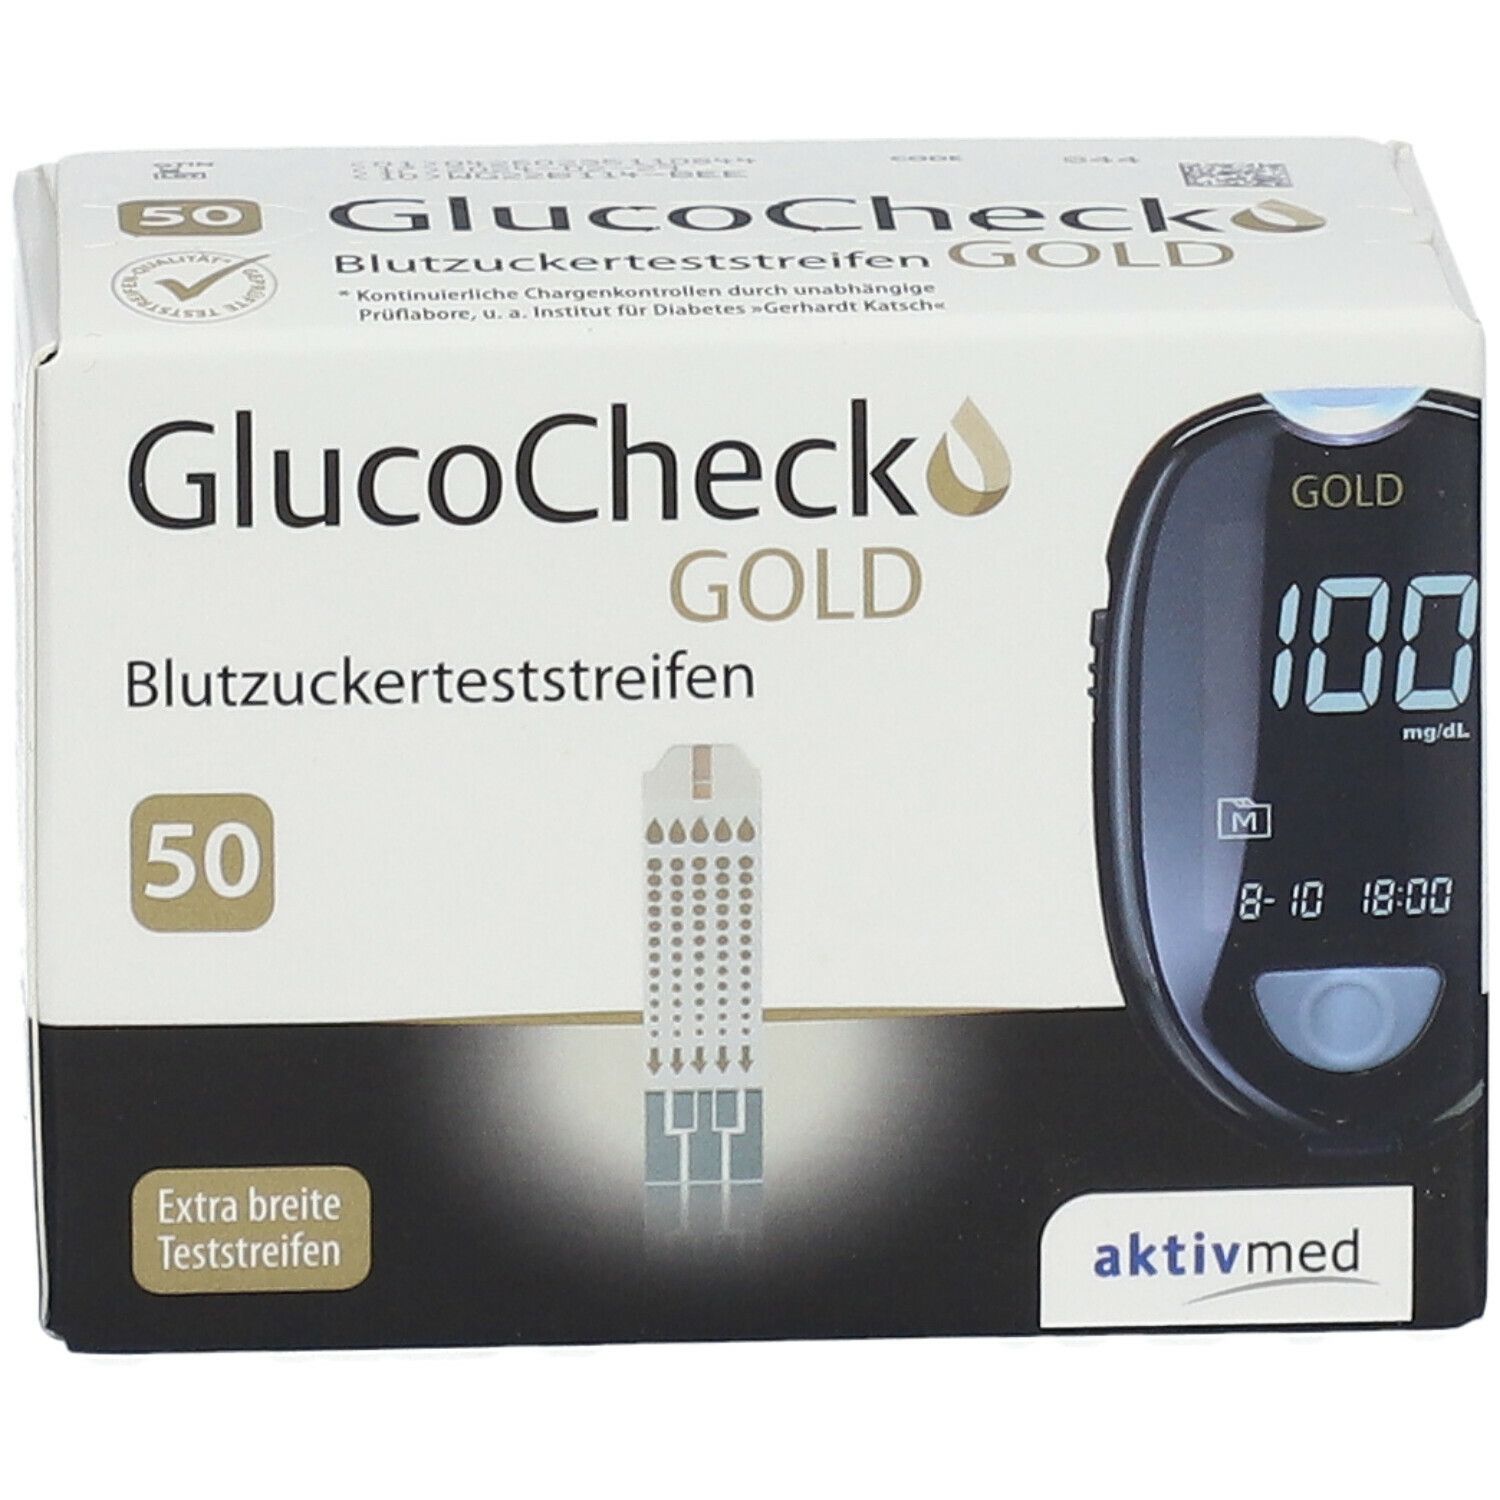 GlucoCheck GOLD Blutzuckerteststreifen